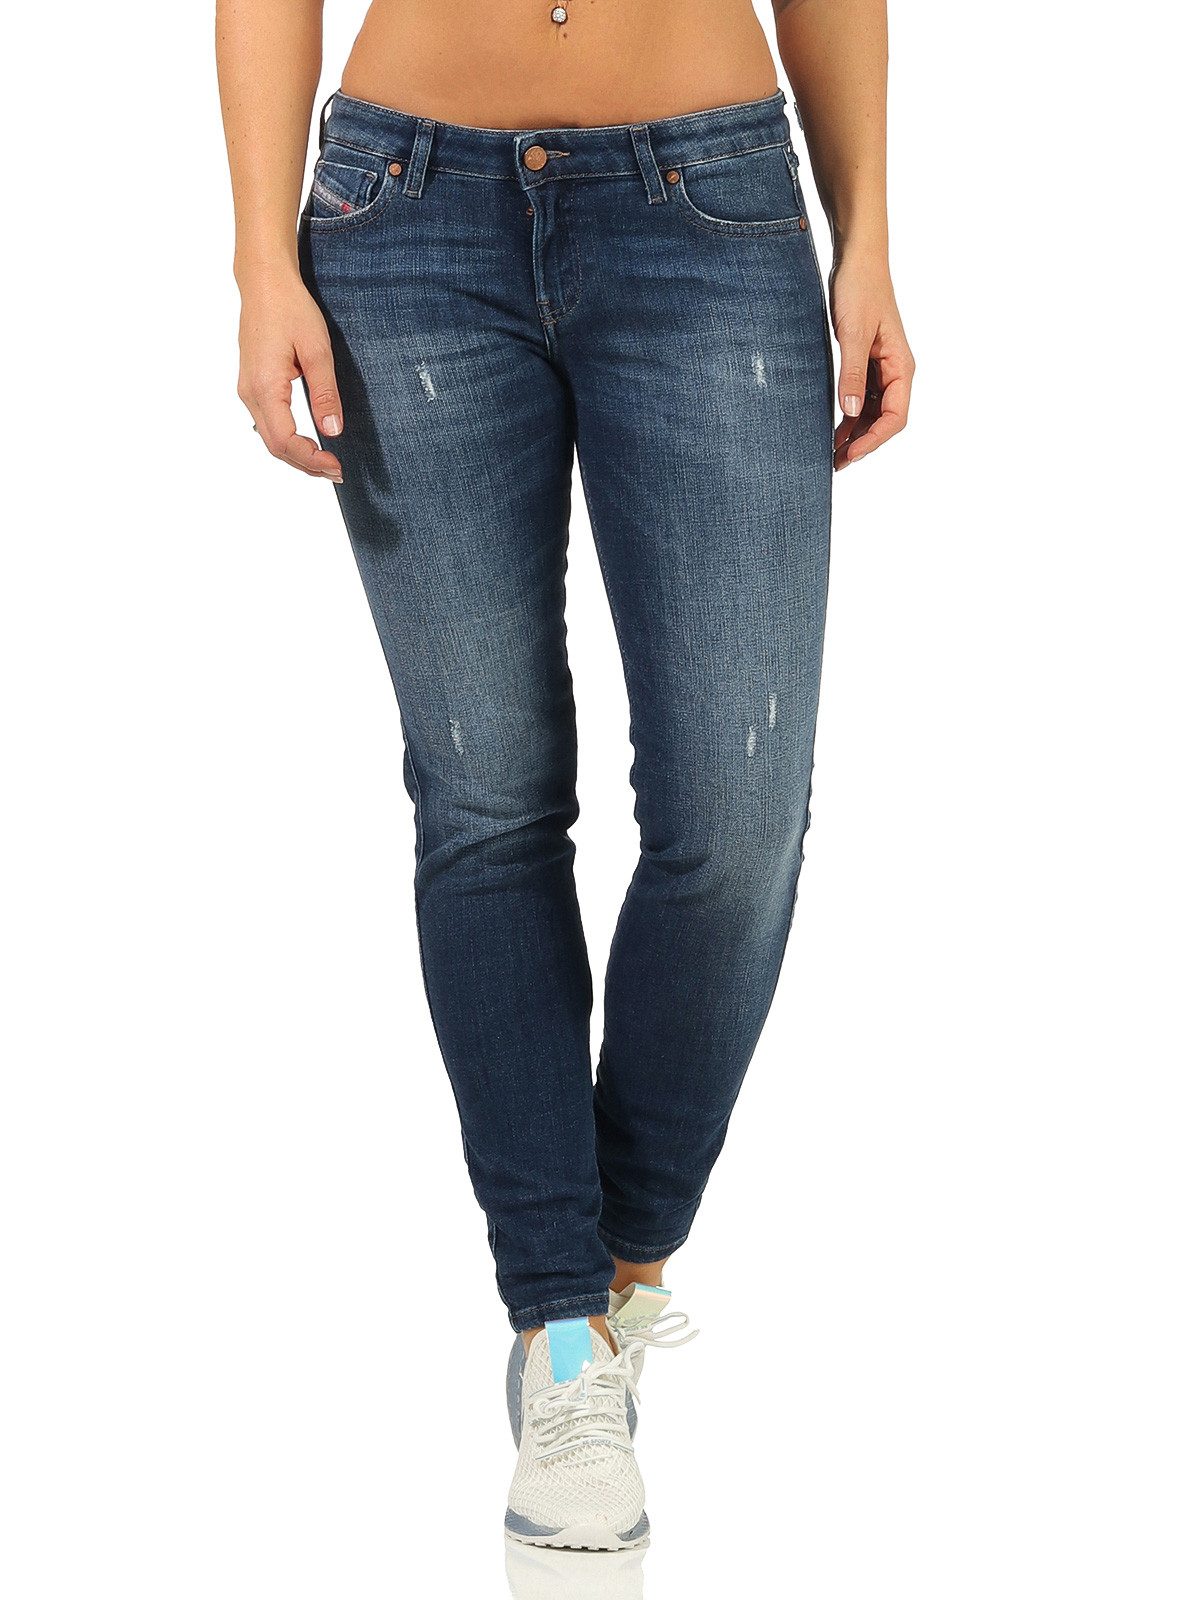 Diesel Skinny-fit-Jeans Gracey 084QJ Used-Look, Super Slim Skinny - Low Waist